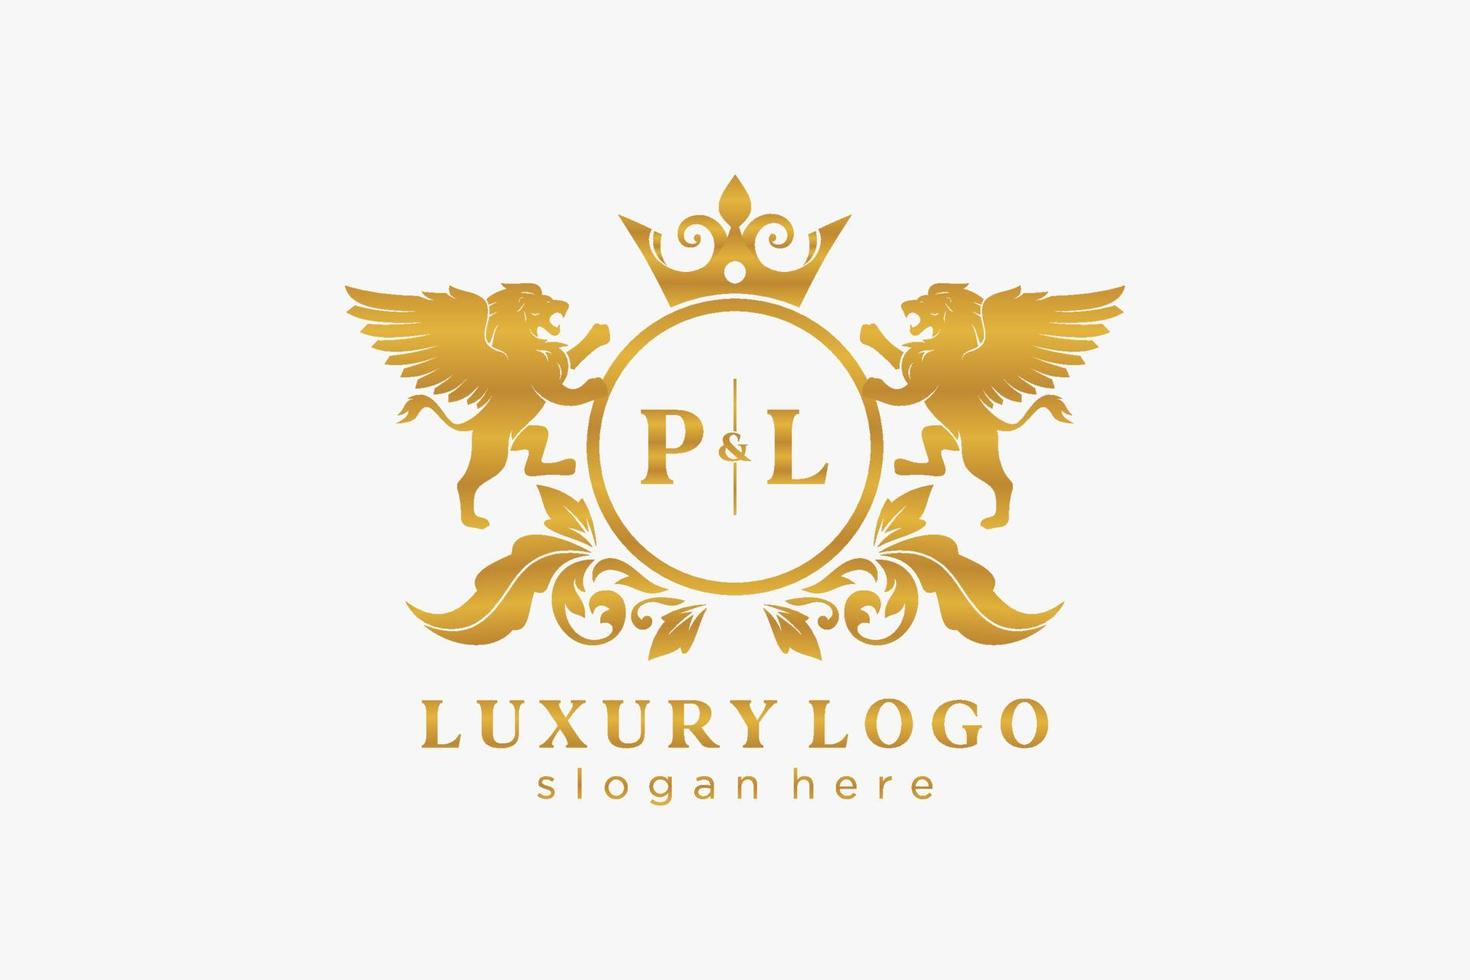 Initial pl Letter Lion Royal Luxury Logo Vorlage in Vektorgrafiken für Restaurant, Lizenzgebühren, Boutique, Café, Hotel, heraldisch, Schmuck, Mode und andere Vektorillustrationen. vektor